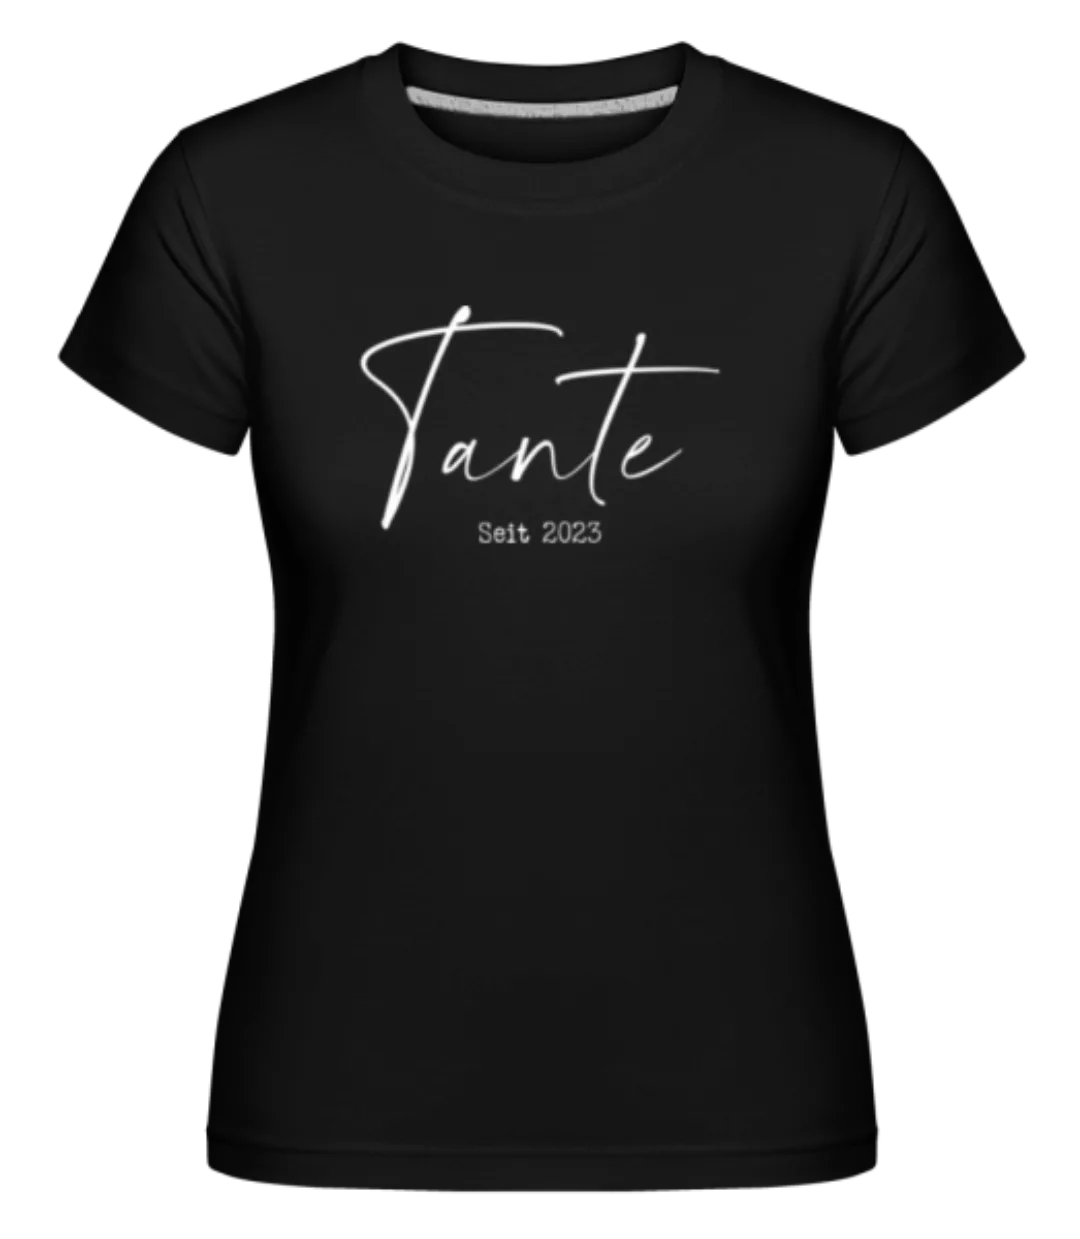 Tante Seit 2023 · Shirtinator Frauen T-Shirt günstig online kaufen